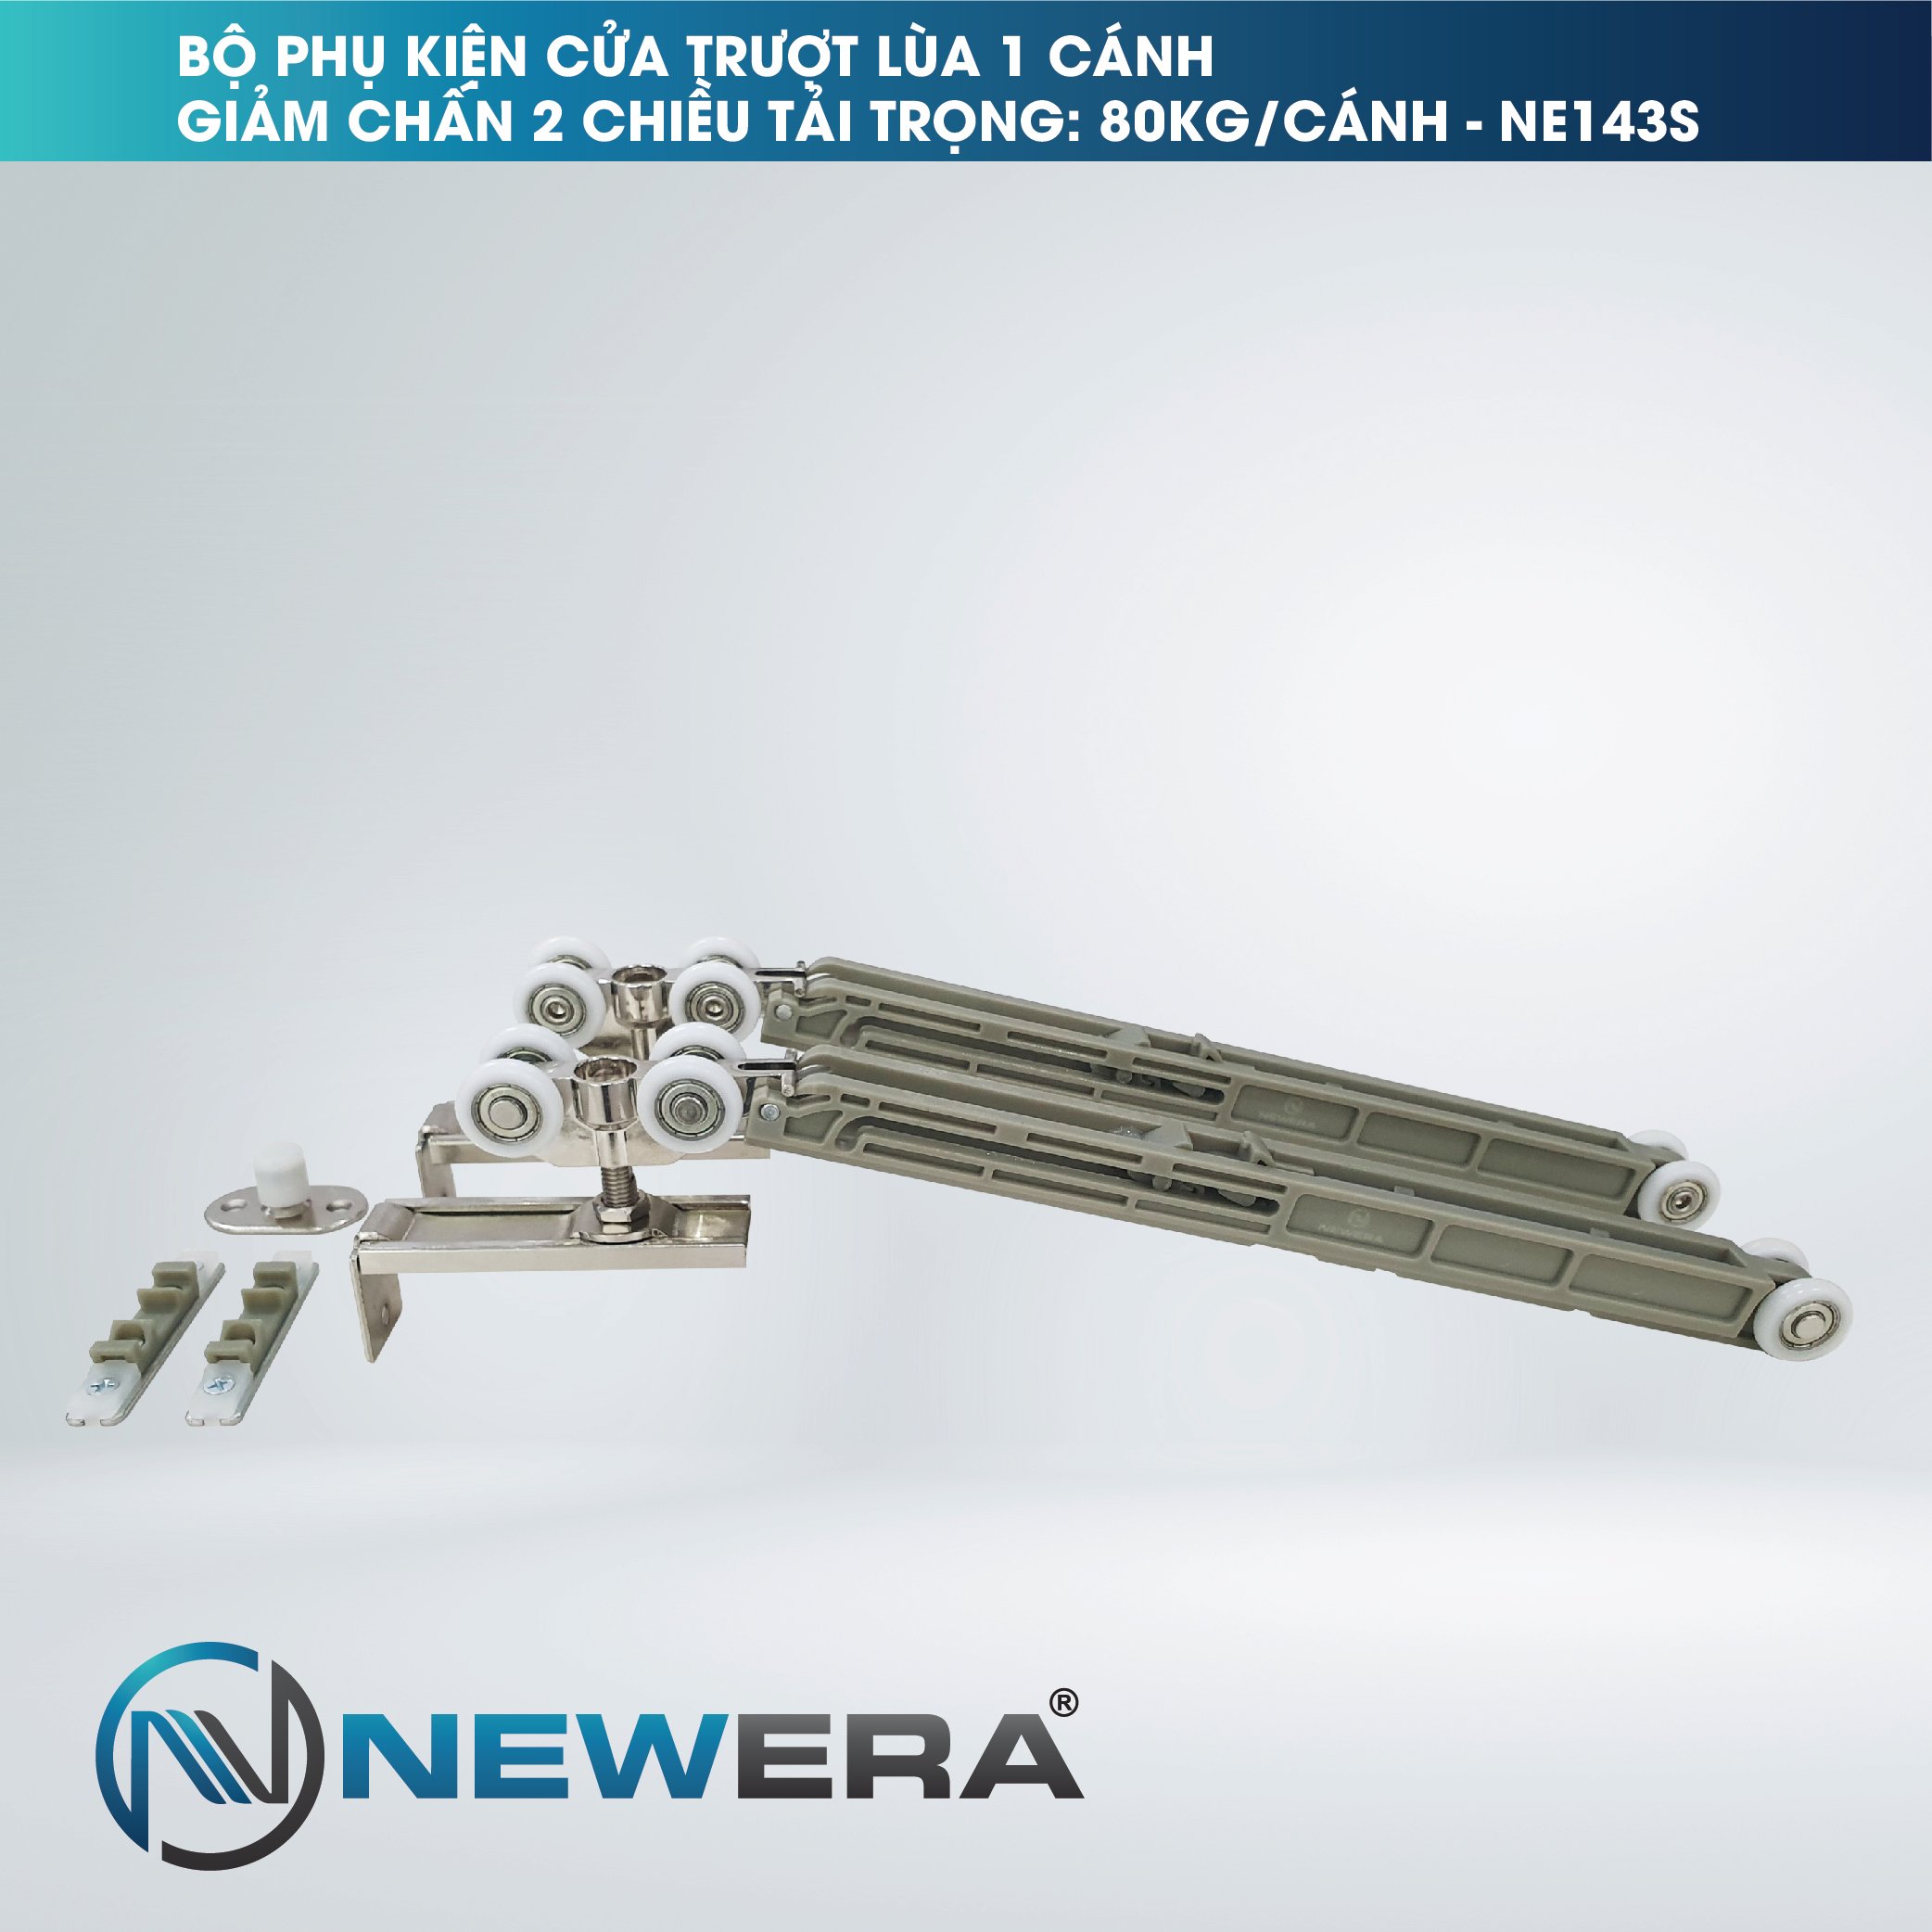 Bộ phụ kiện cửa trượt lùa NewEra tải trọng 80kg/cánh NE143S